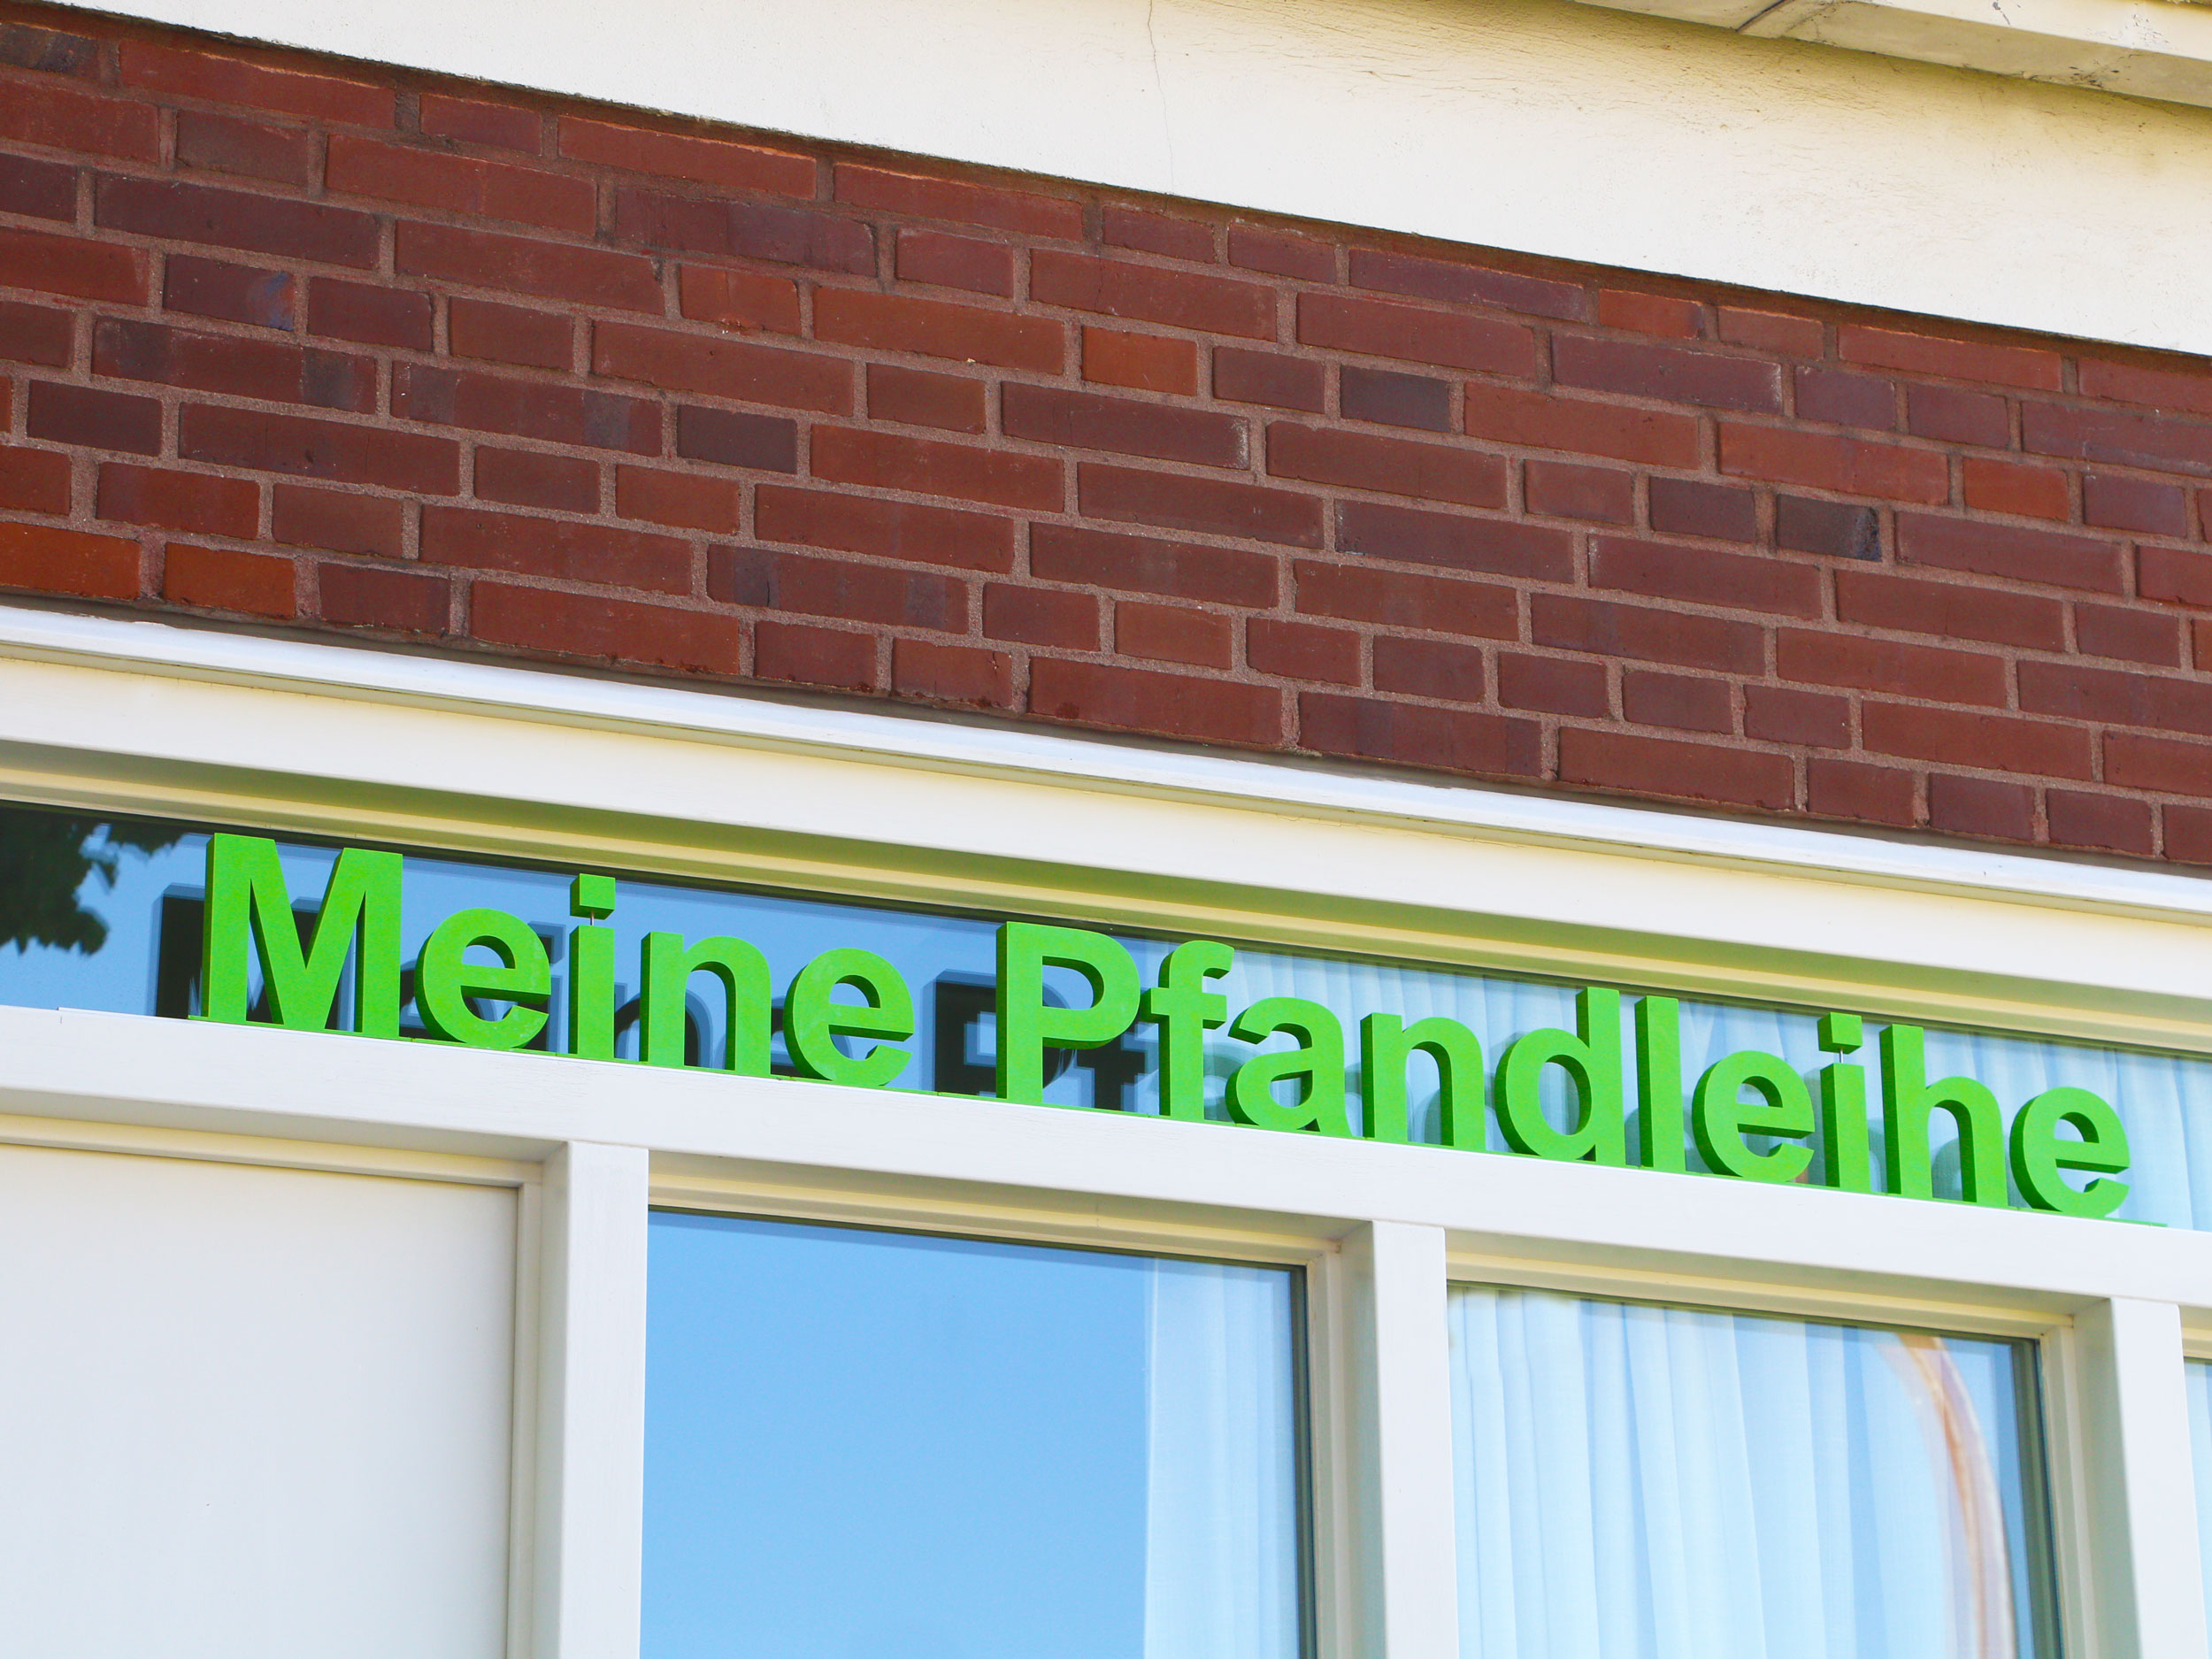 Meine Pfandleihe - Beratung für Existenzgründer und Betrieb einer Pfandleihe in Rheine, Kreis Steinfurt.